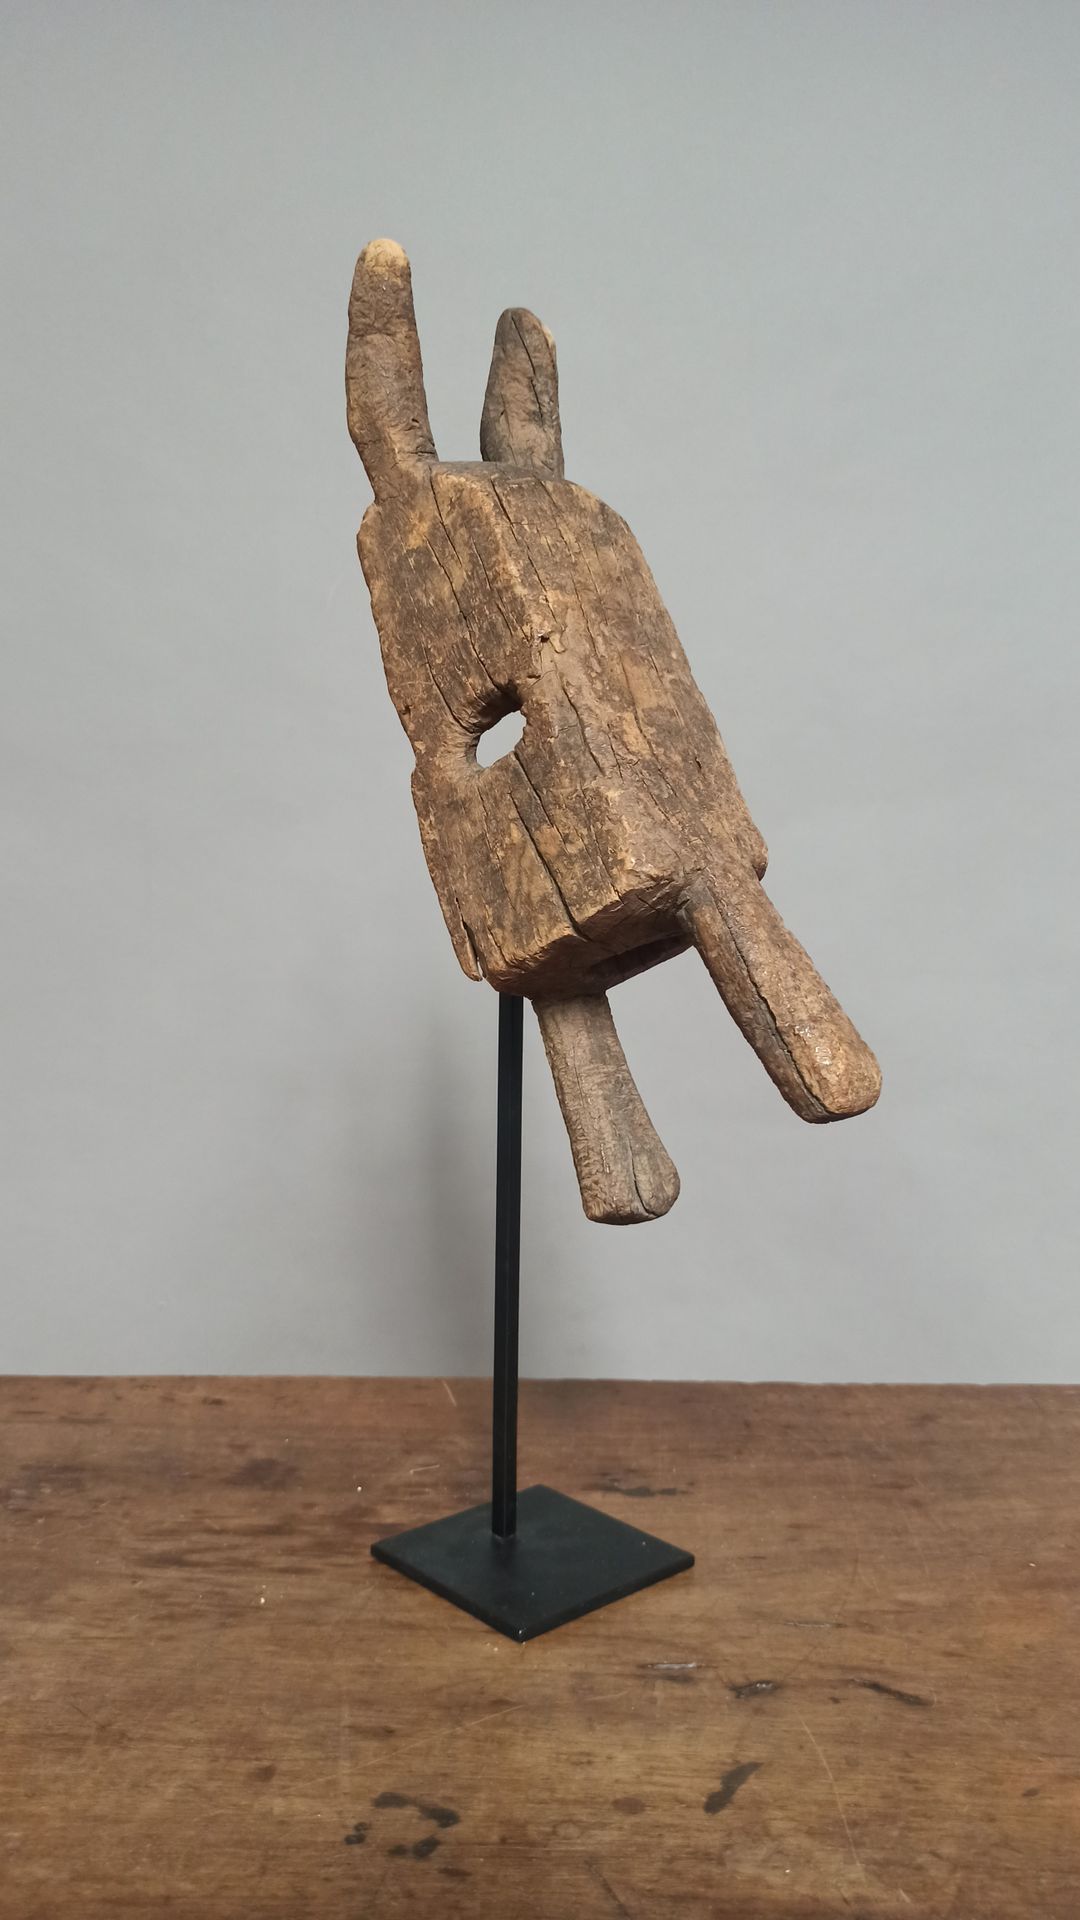 Null Maske vom Typ Dogon, Mali

Verwittertes Holz

H. 43,5 cm